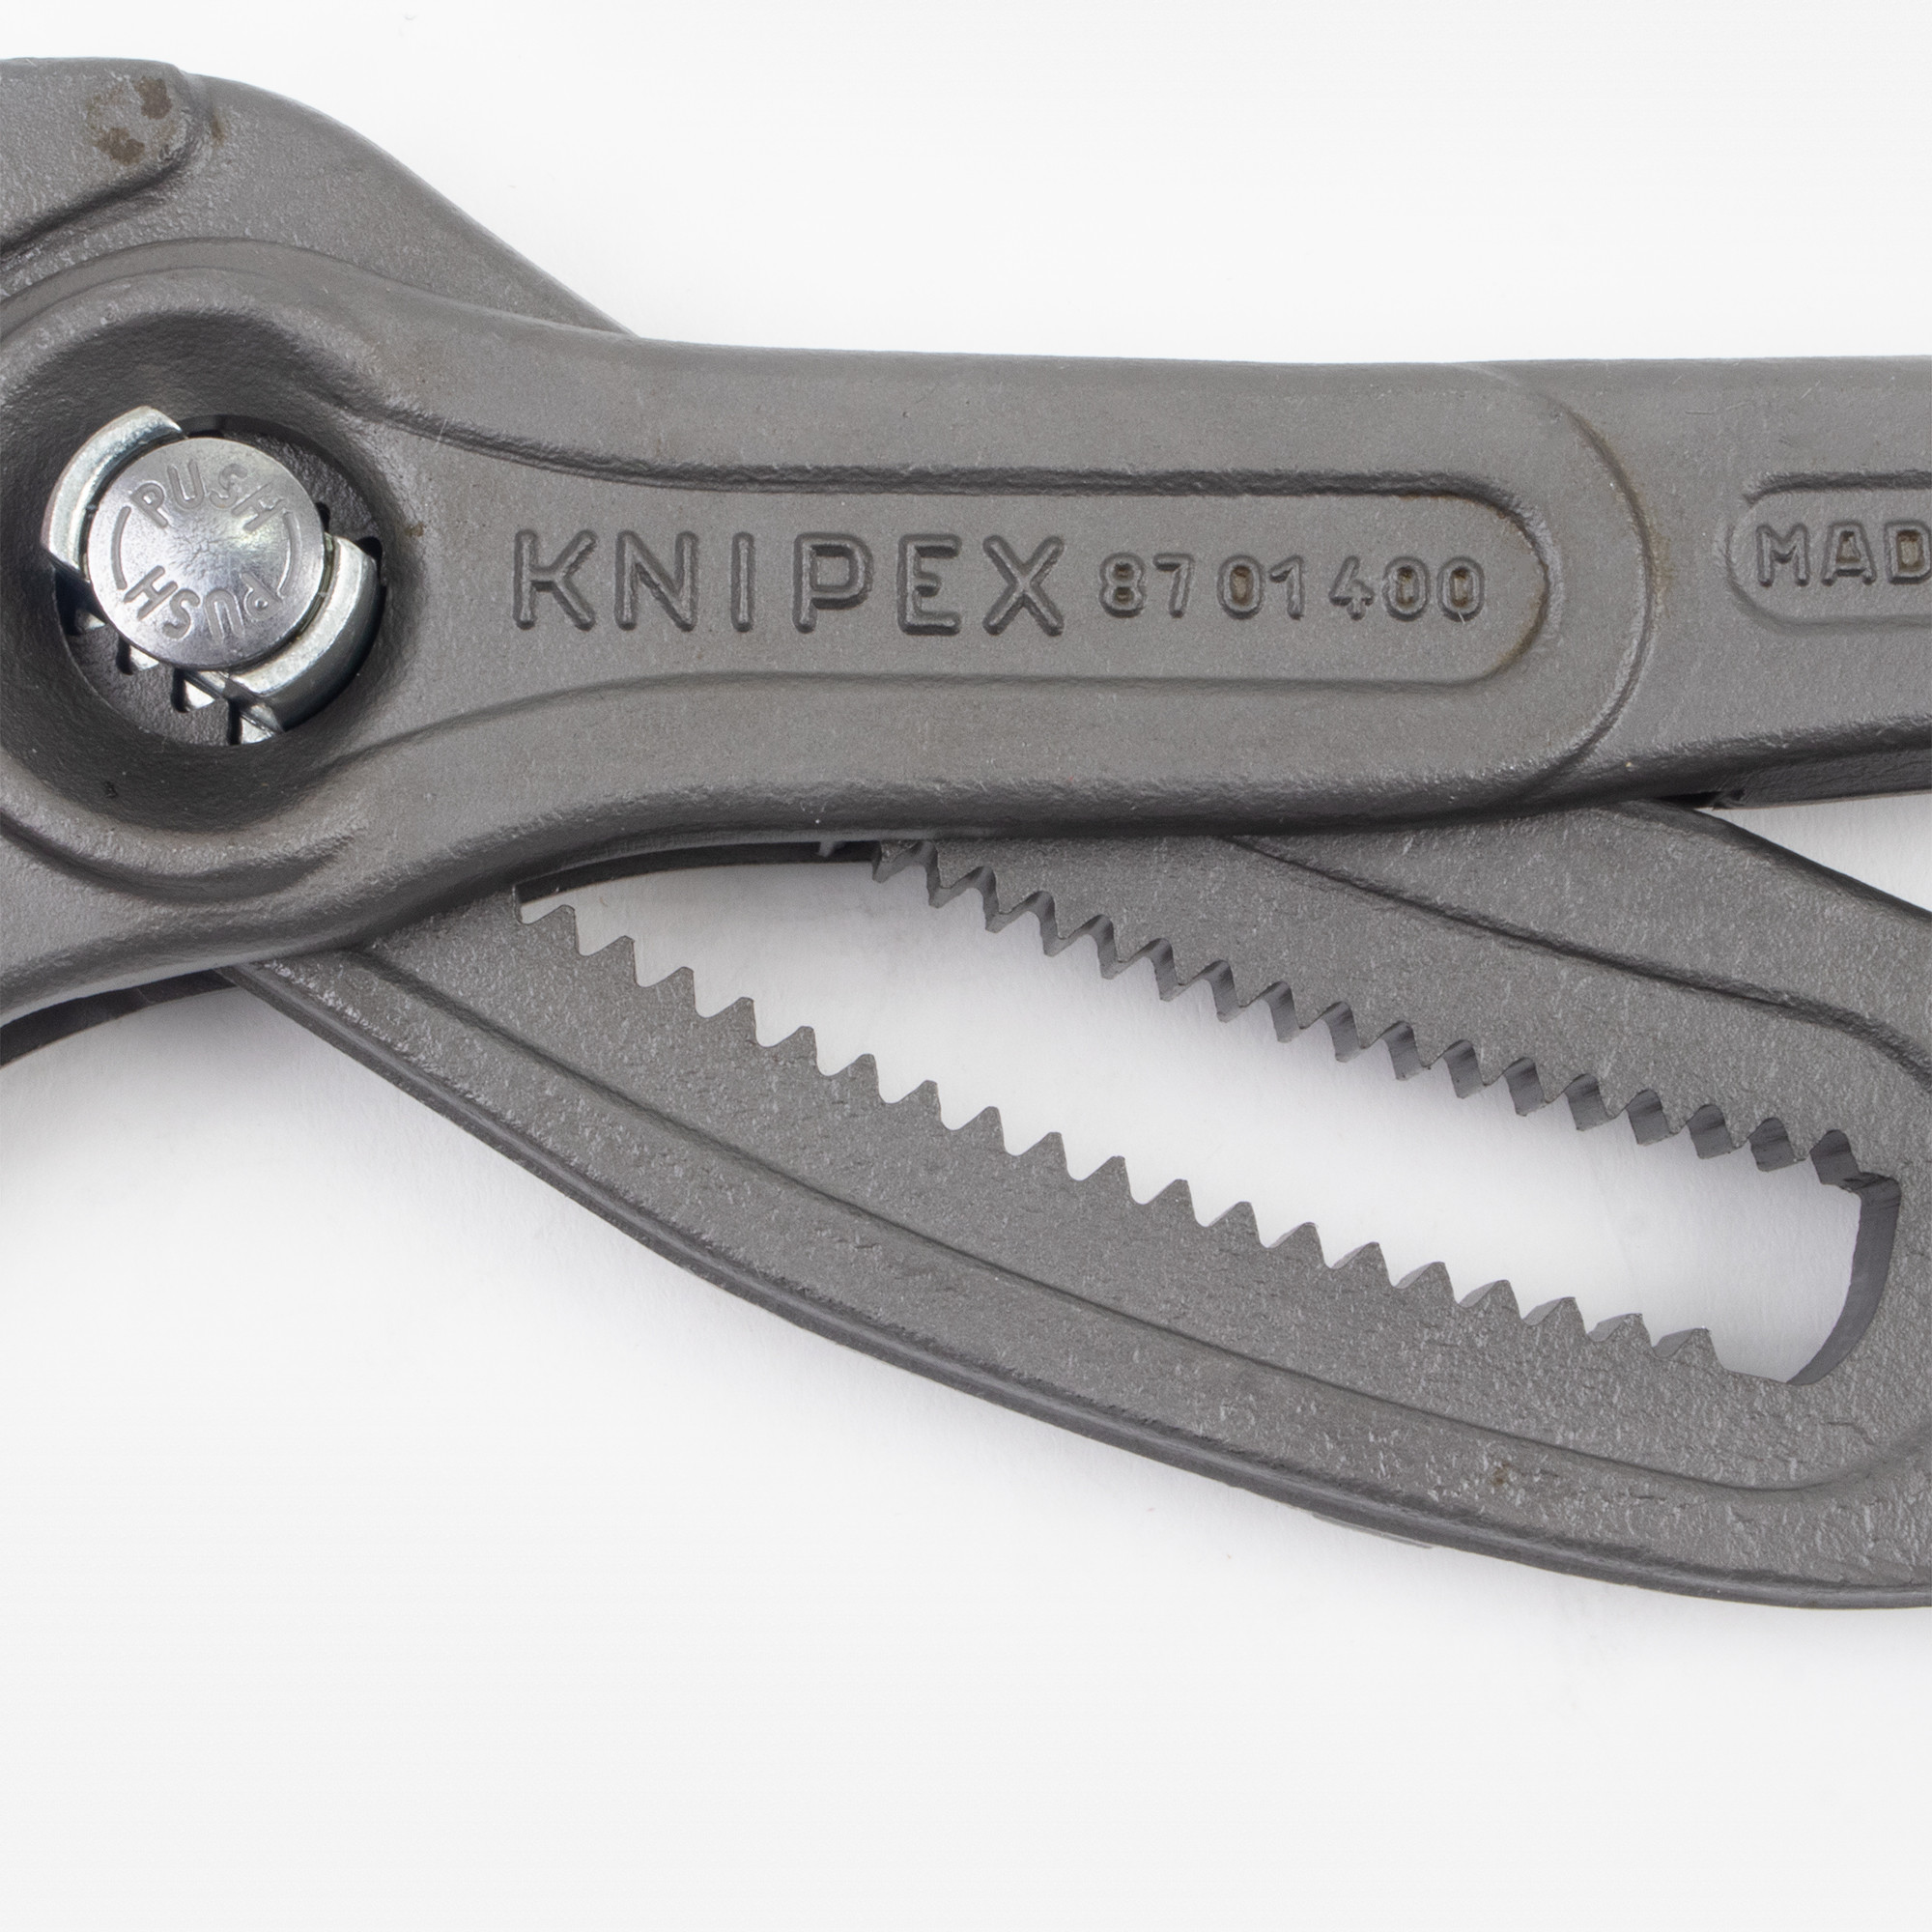 Knipex Cobra XL 87 01 400 Pince multiprise Taille (métrique) 95 mm 400 mm  4003773045113